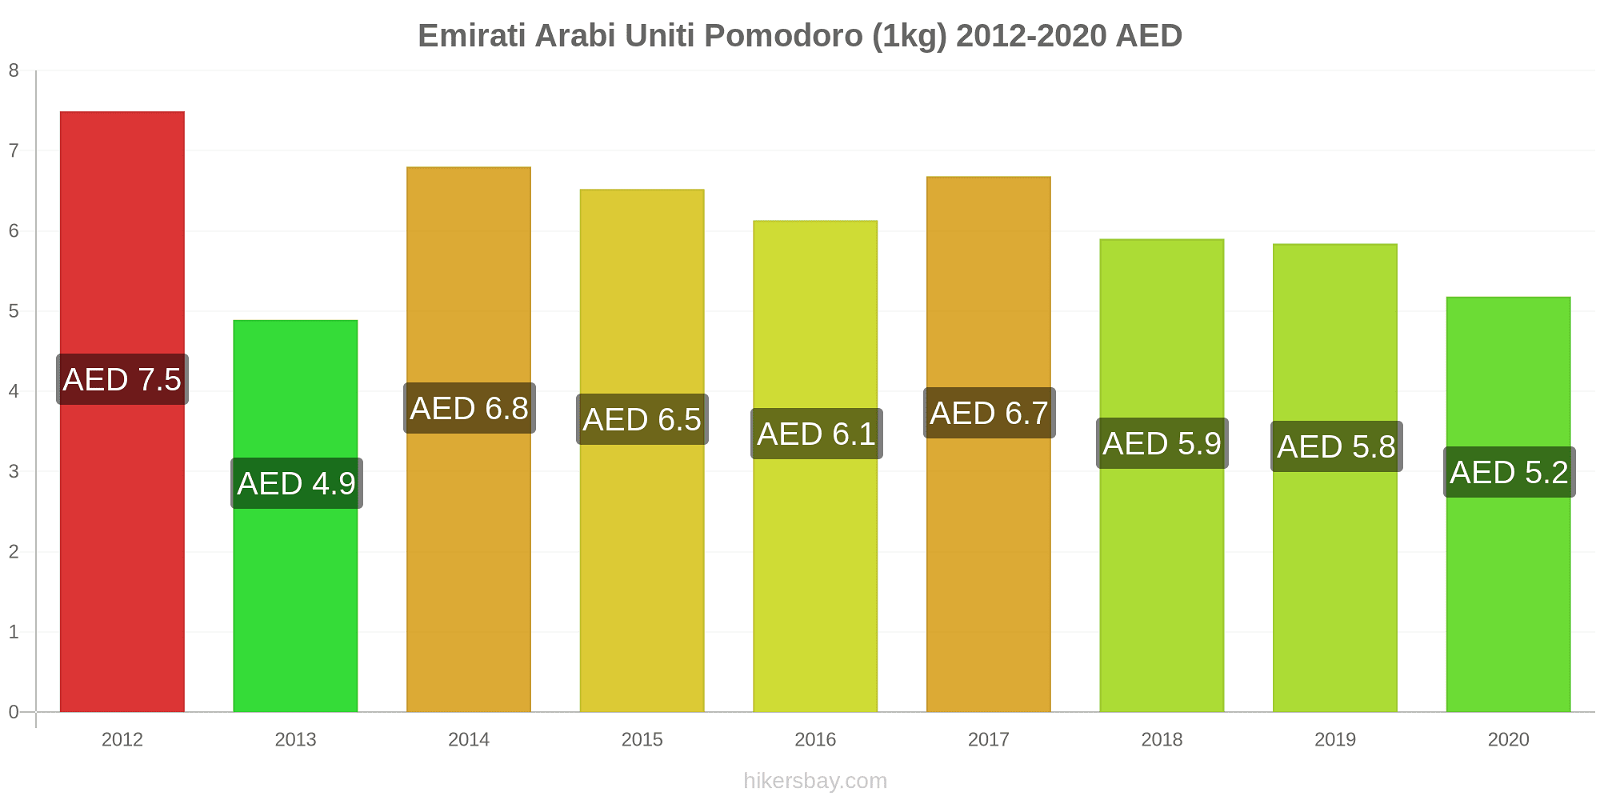 Emirati Arabi Uniti variazioni di prezzo Pomodoro (1kg) hikersbay.com